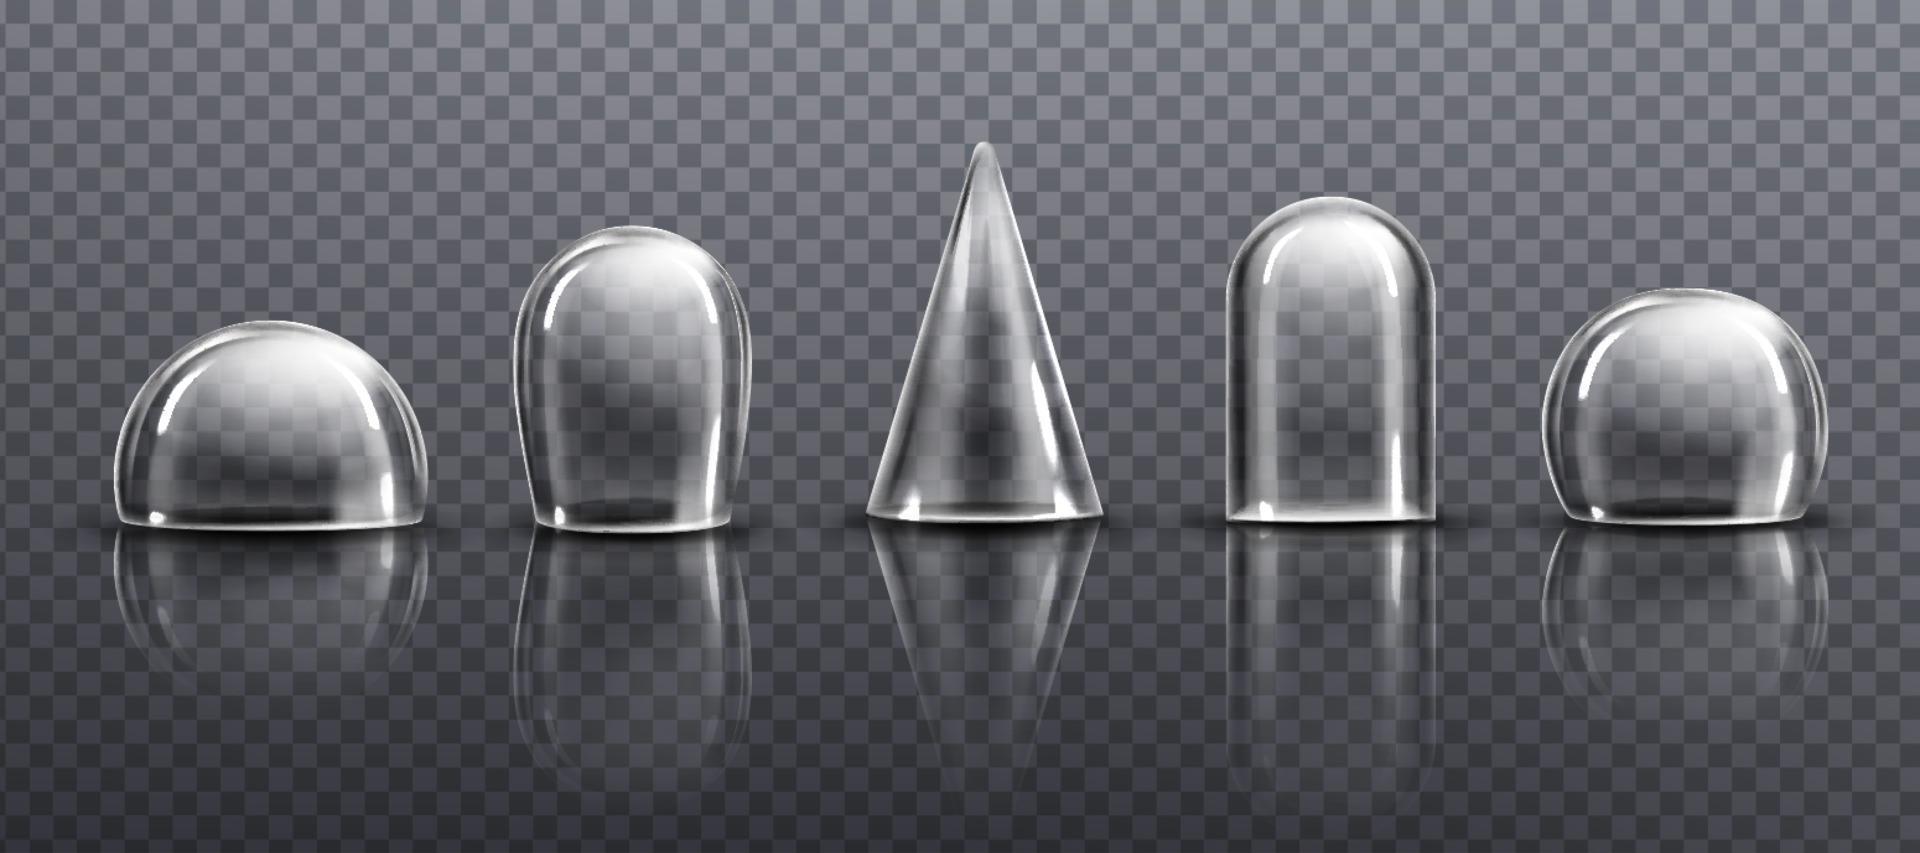 Kuppeln aus Glas oder durchsichtigem Kunststoff in verschiedenen Formen vektor